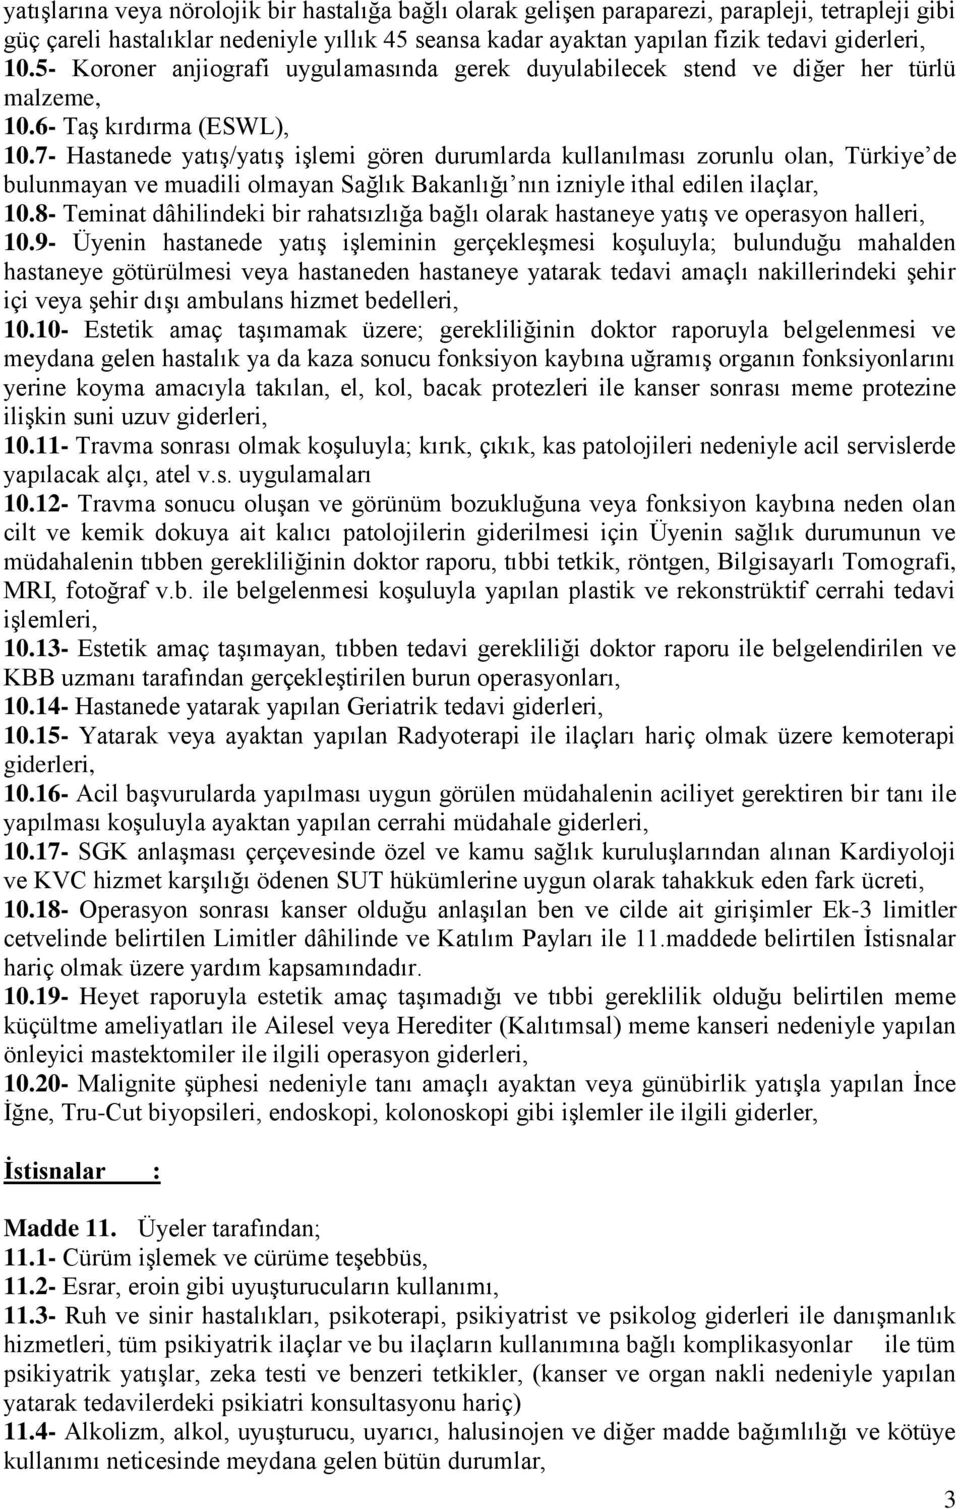 7- Hastanede yatış/yatış işlemi gören durumlarda kullanılması zorunlu olan, Türkiye de bulunmayan ve muadili olmayan Sağlık Bakanlığı nın izniyle ithal edilen ilaçlar, 10.